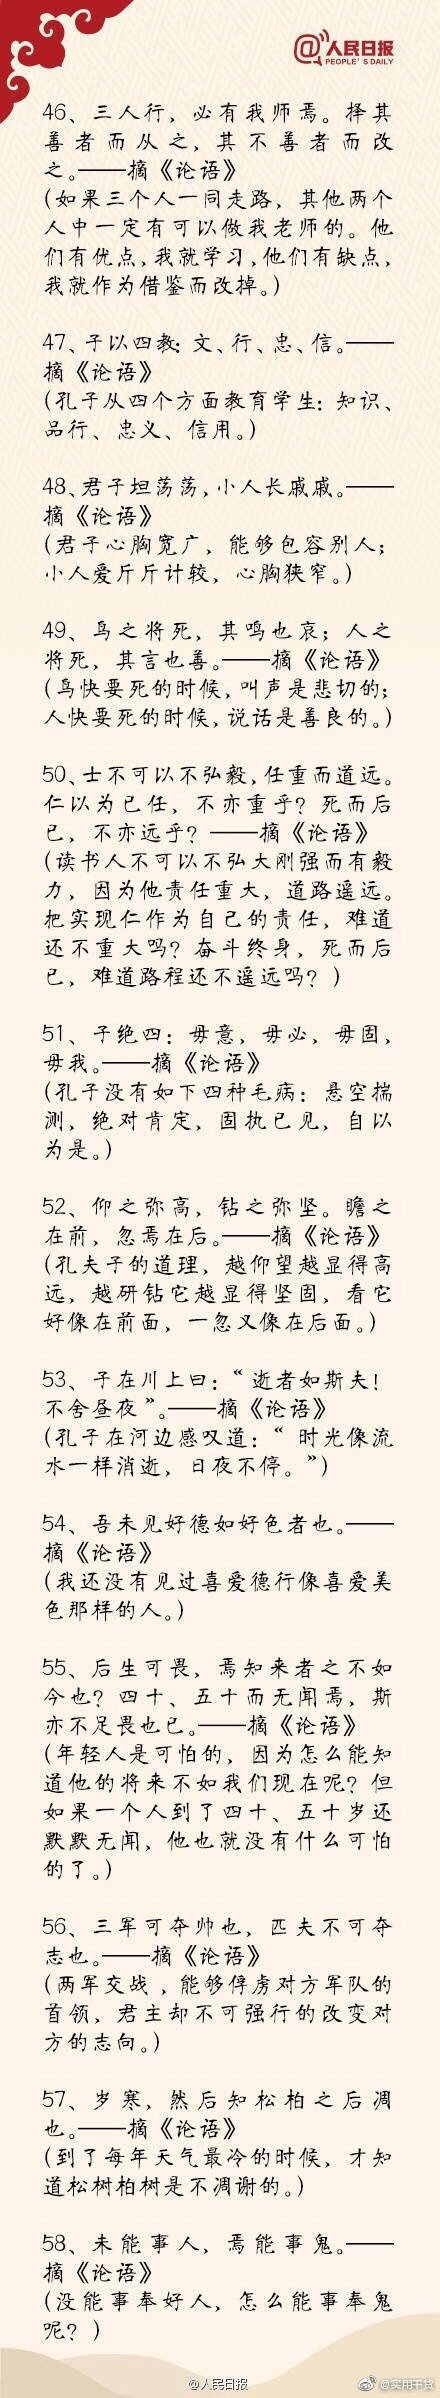 中国古籍中100句最经典语录